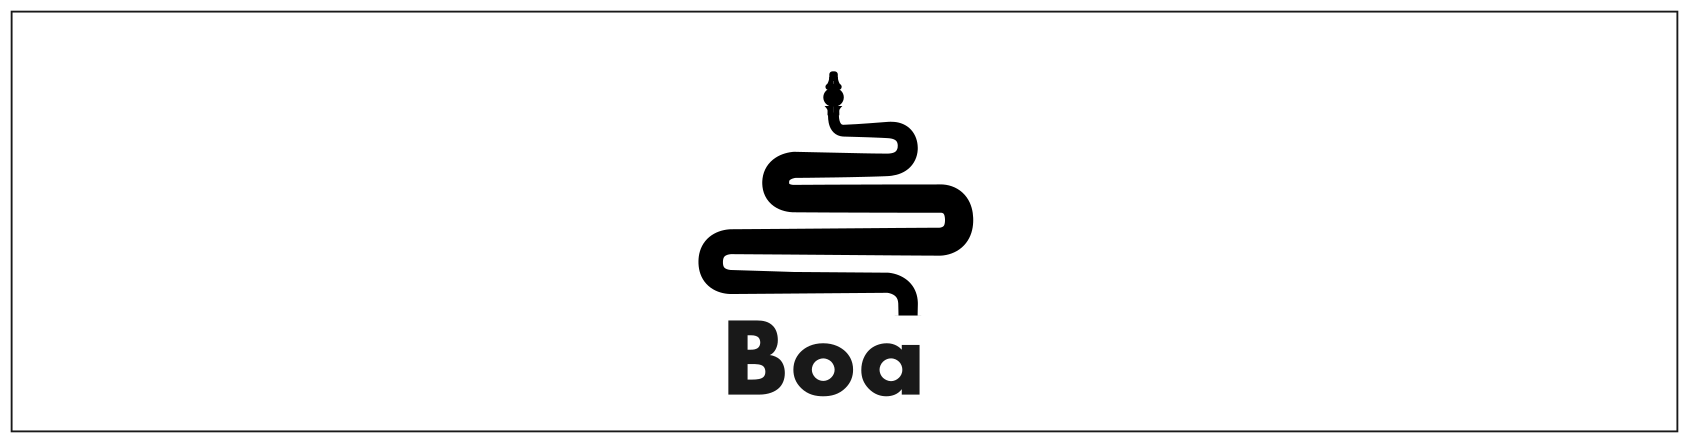 boa header image